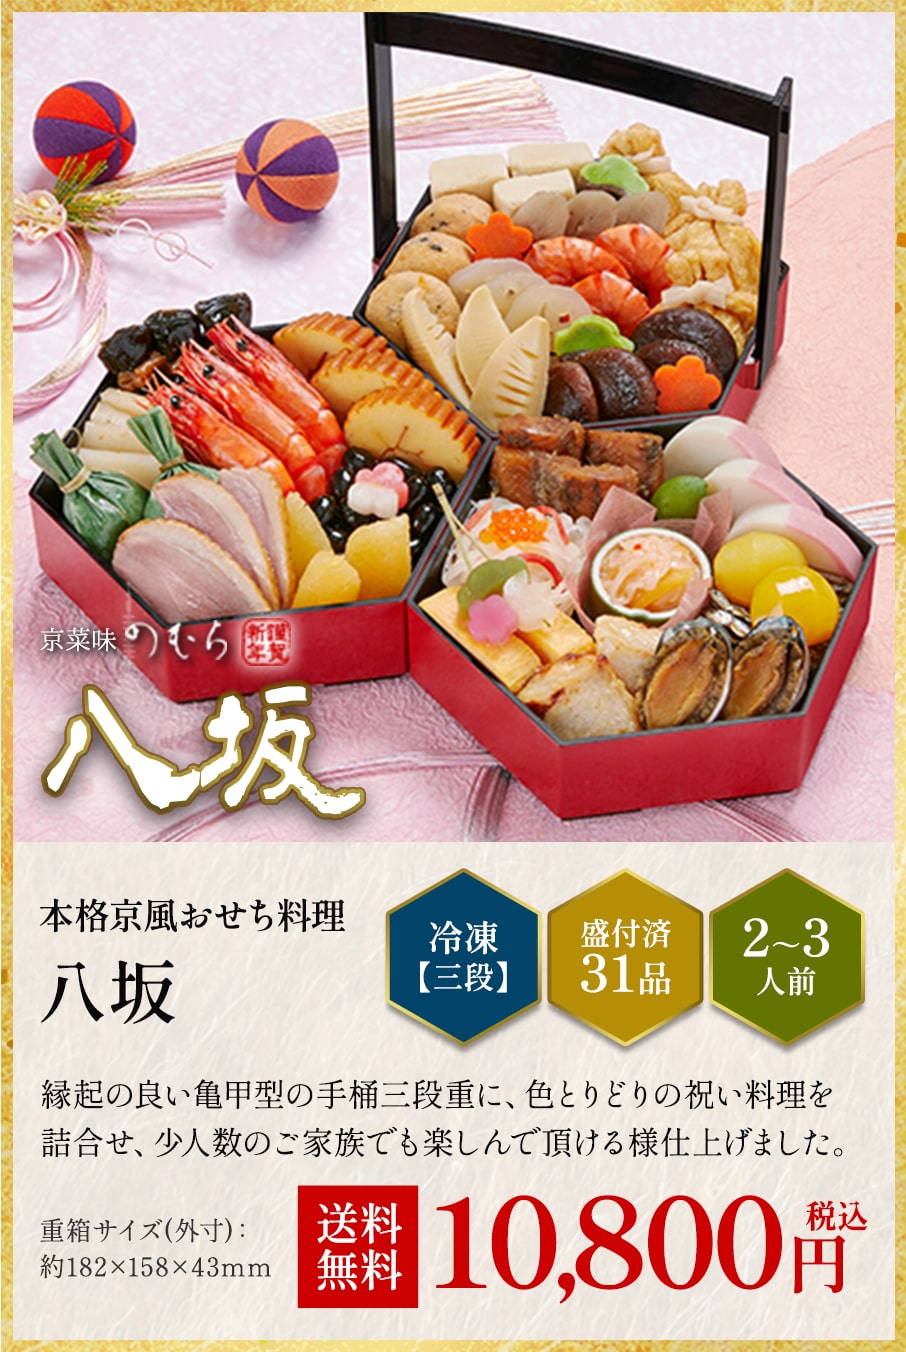 本格京風おせち料理「八坂」冷凍三段 盛付済み31品 2~3人前 10,800円